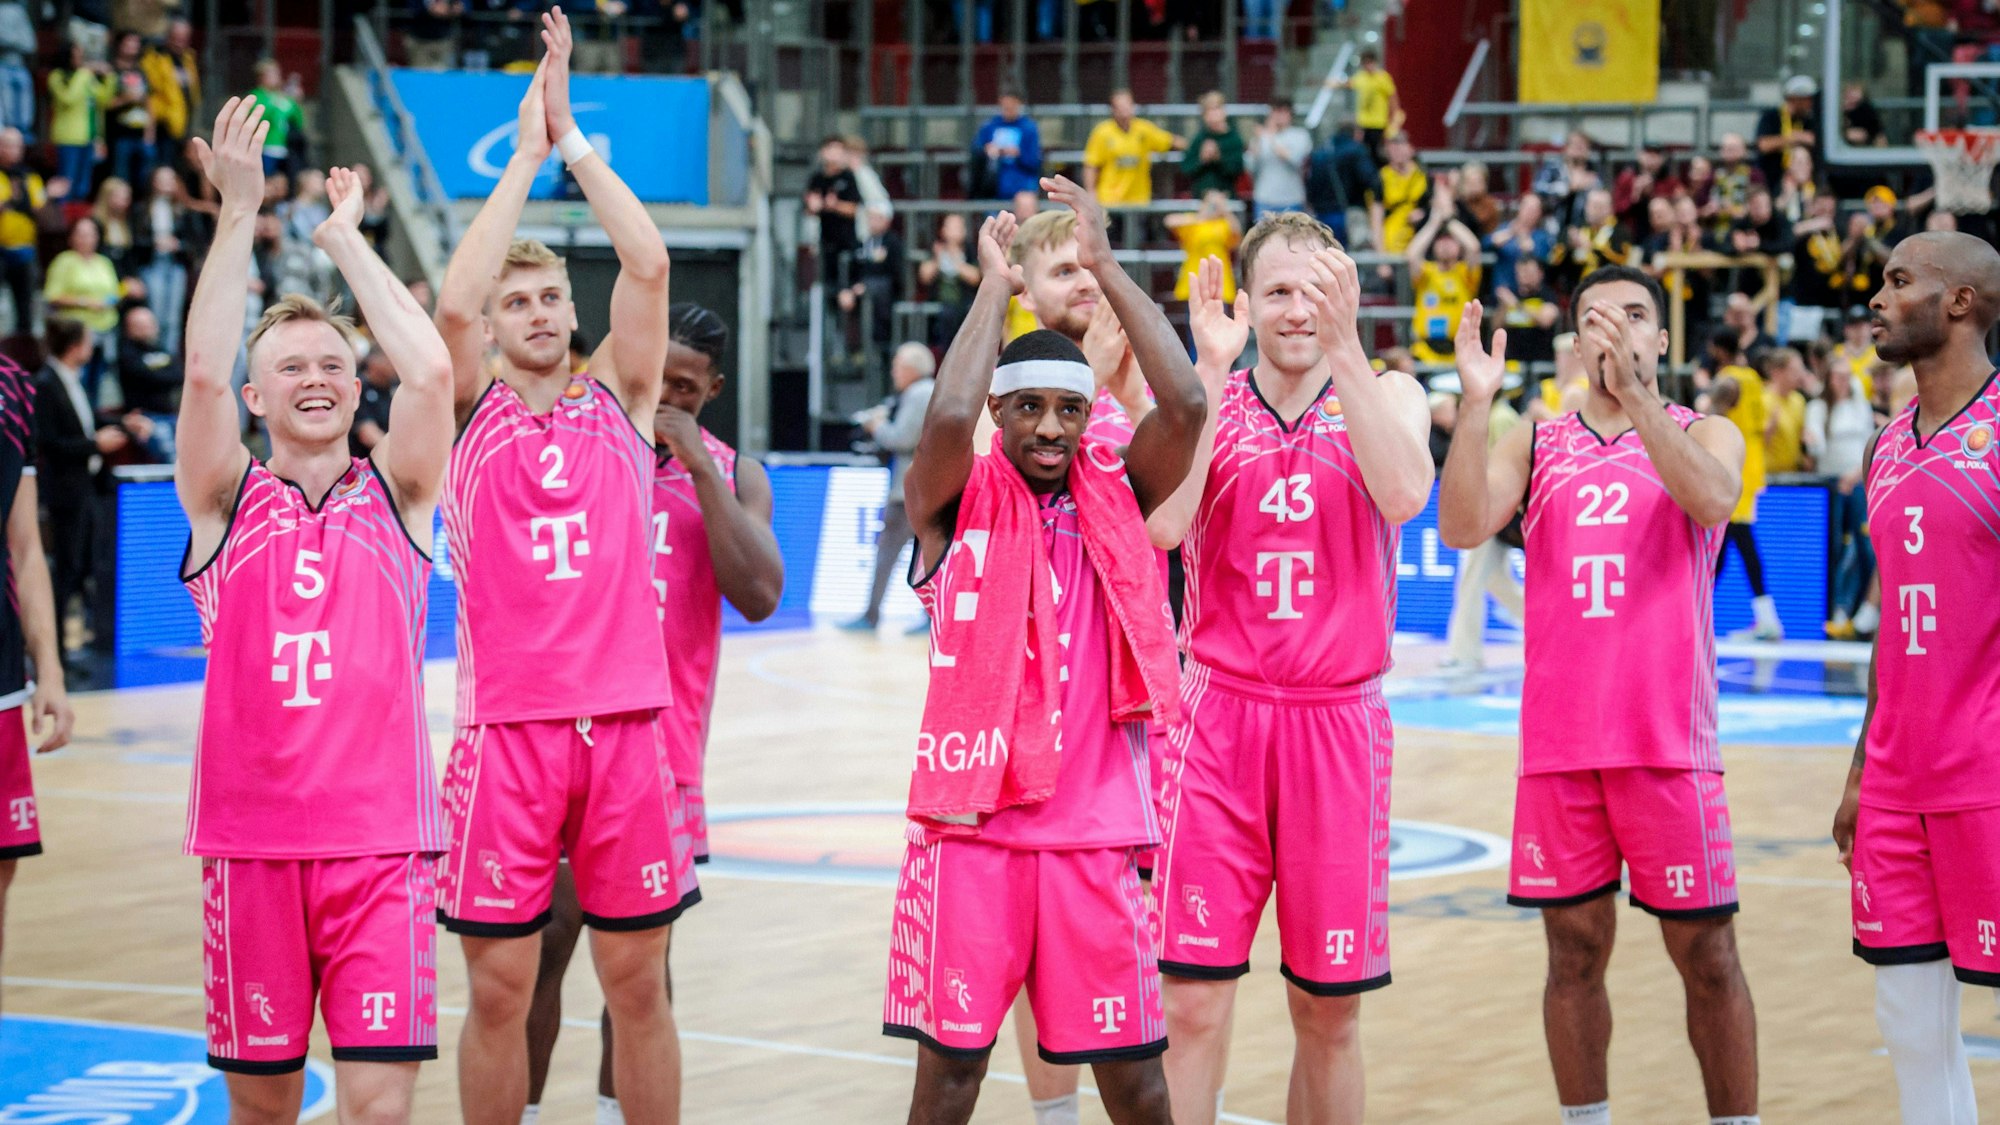 Jubel bei den Baskets über den Einzug ins Pokal-Viertelfinale:  Die Spieler Applaudieren erfreut in Richtung des Publikums.